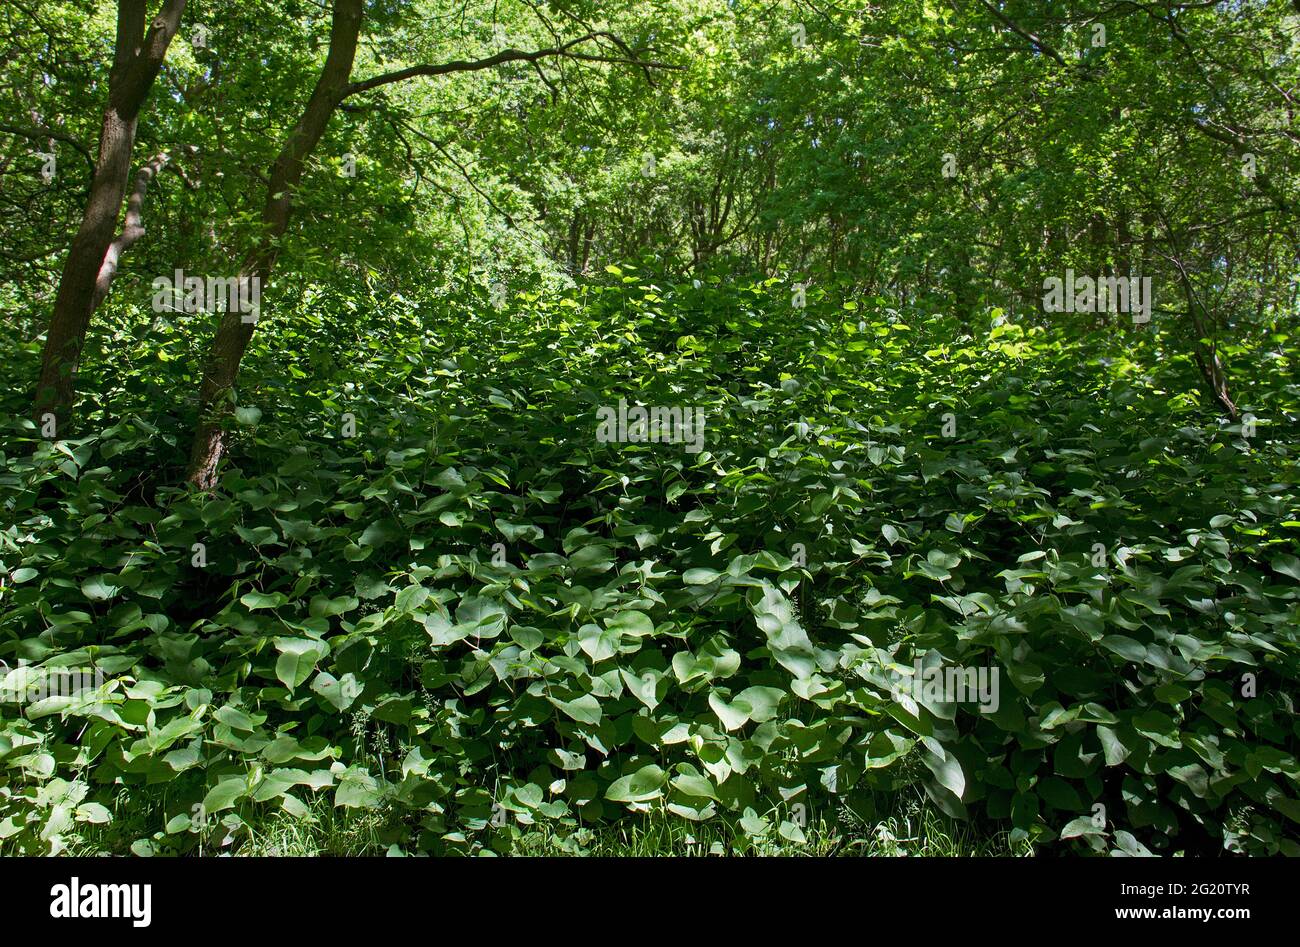 El knotweed asiático, una especie invasora, una plaga en la silvicultura, crece sobre toda la vegetación en un bosque Foto de stock